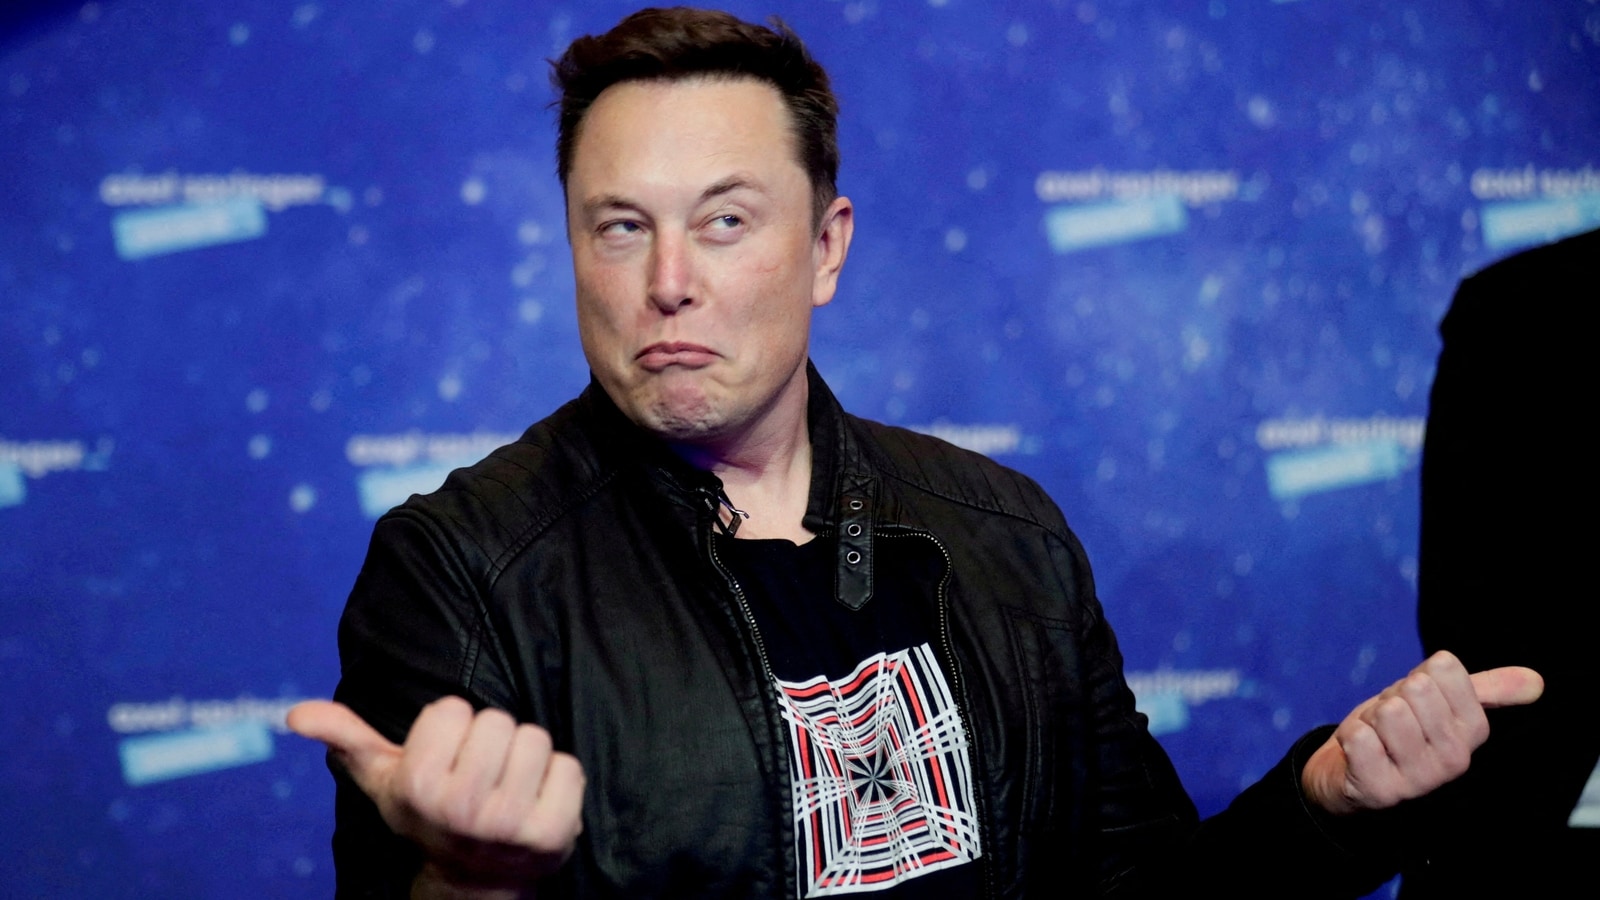 Elon Musk’s Elvis Presley song tweet amid Twitter takeover bid: ‘Love me tender’